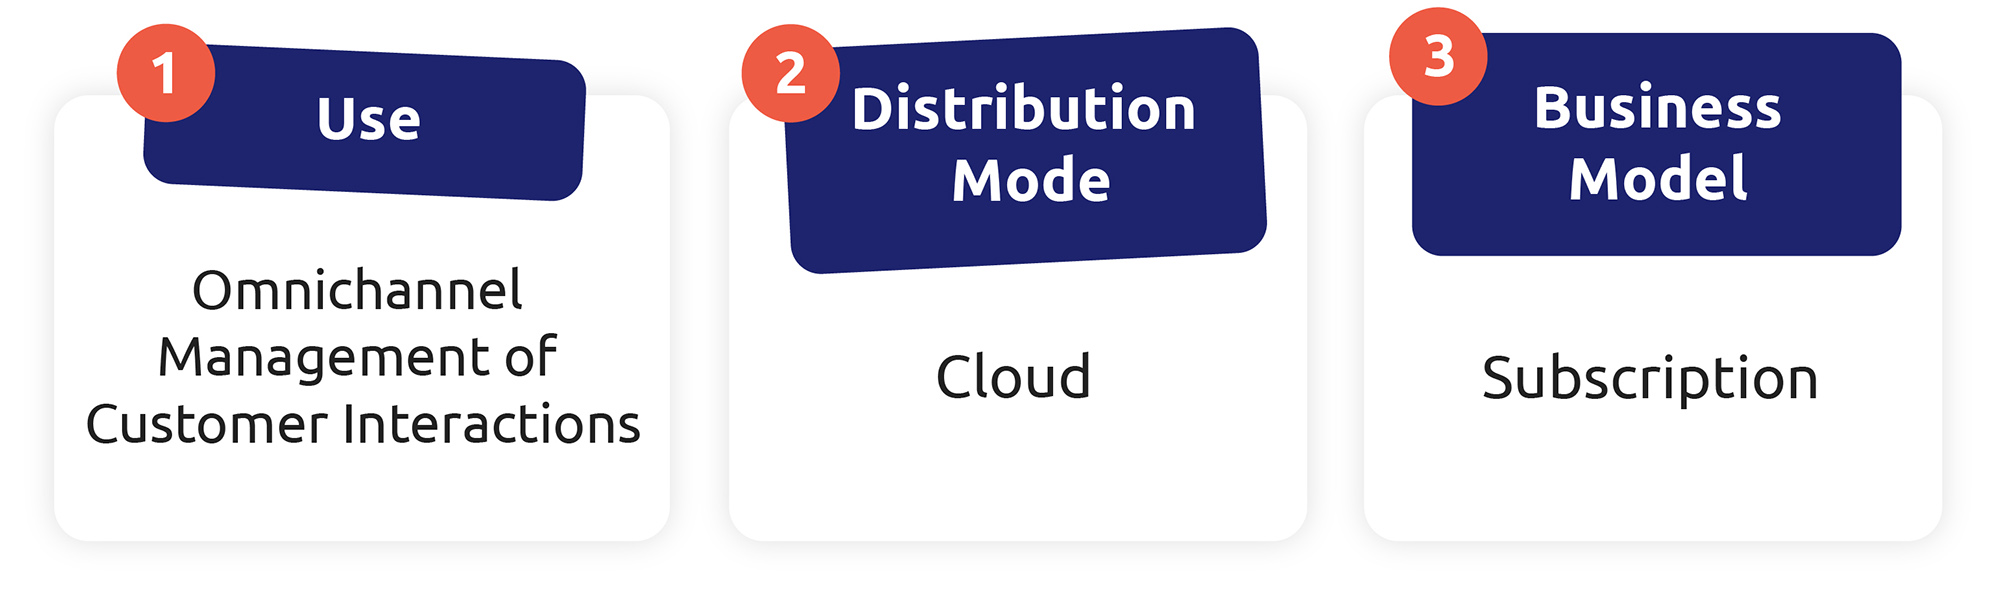 Las tres características de un CCaaS son: gestión omnicanal, distribución basada en la nube y un sistema de suscripción.
